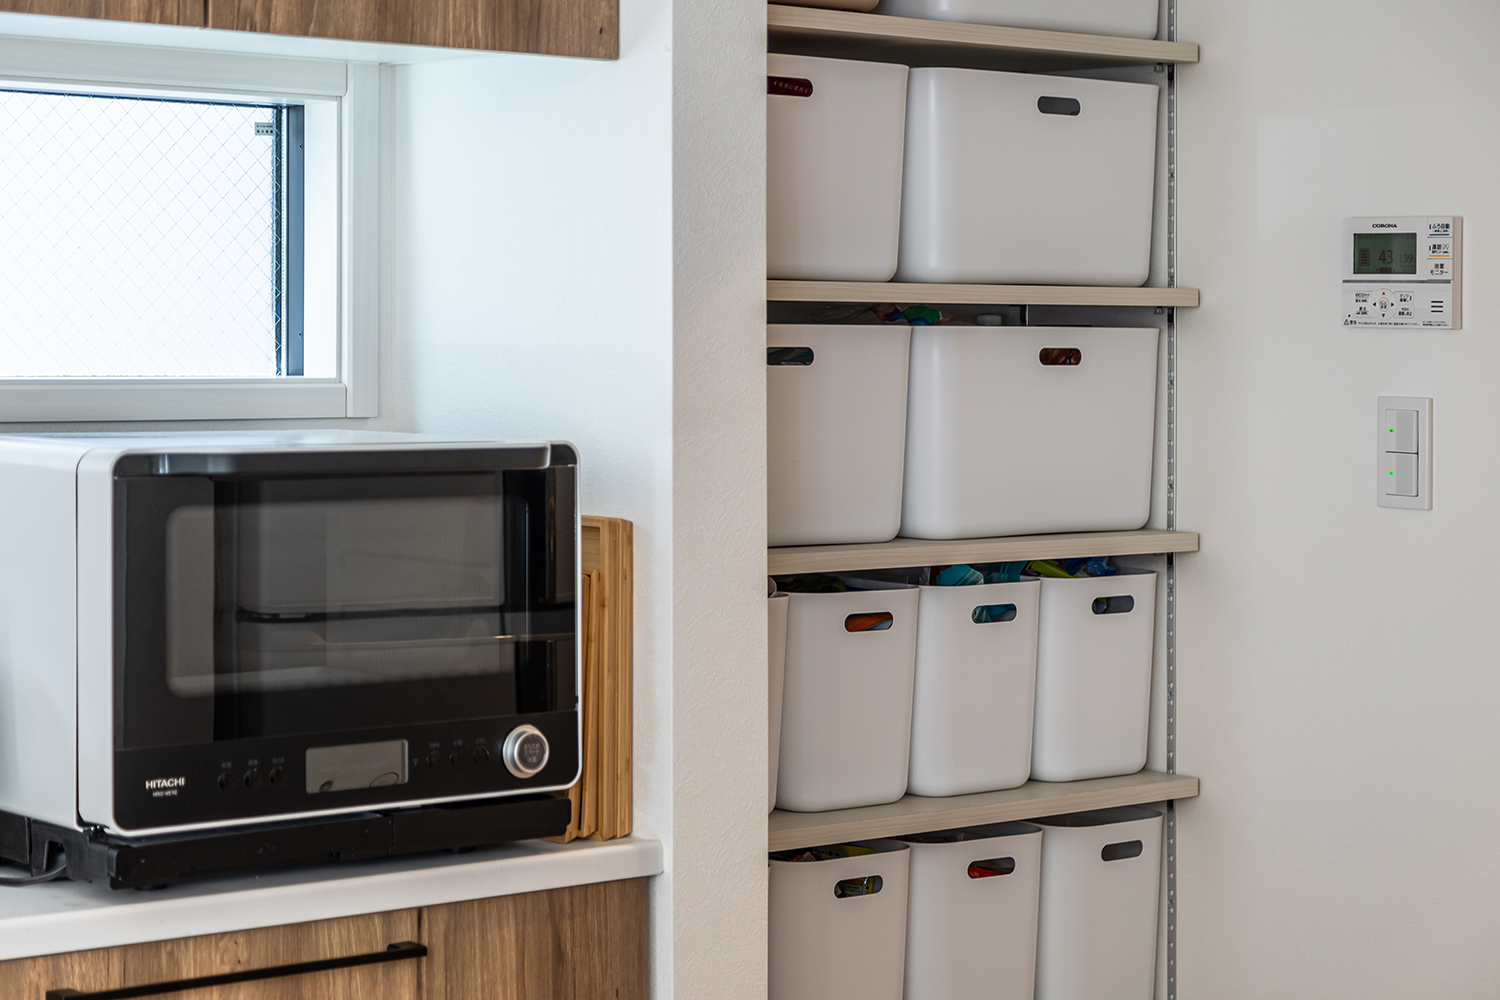 キッチン横の収納スペースには、可動棚を設置しました。棚の高さを調整し、効率的に収納することができます。